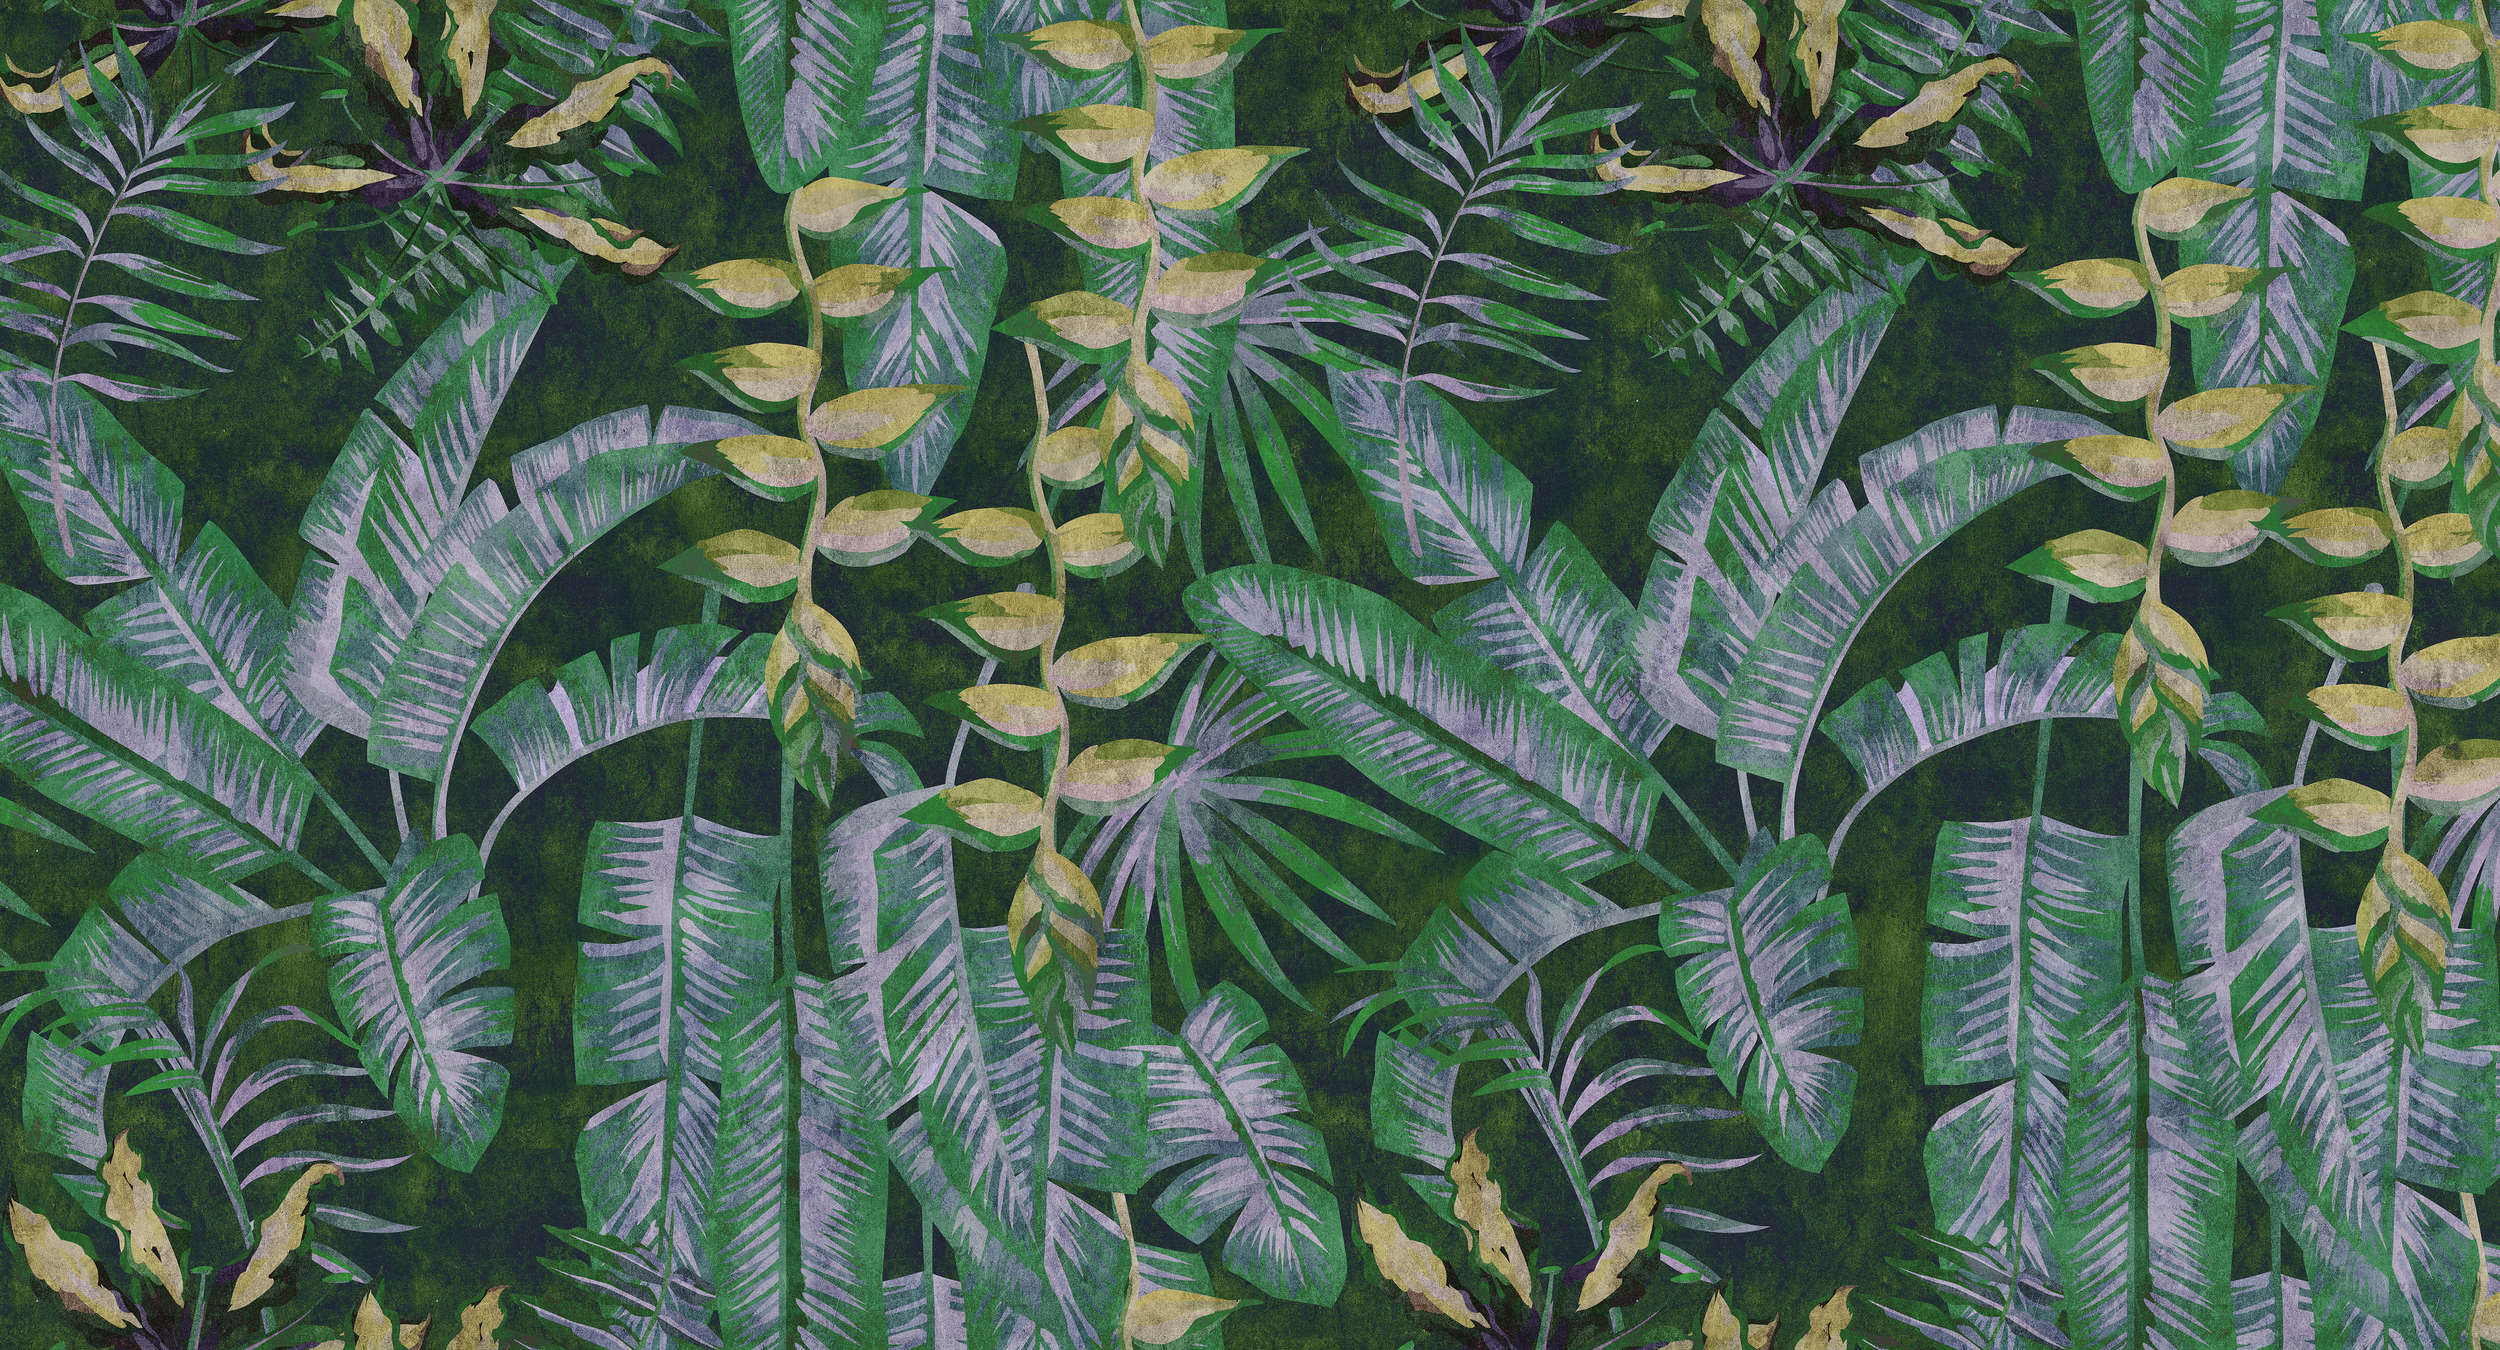             Tropicana 2 - Papier peint imprimé numériquement avec des plantes tropicales dans une structure de papier buvard - jaune, vert | intissé lisse mat
        